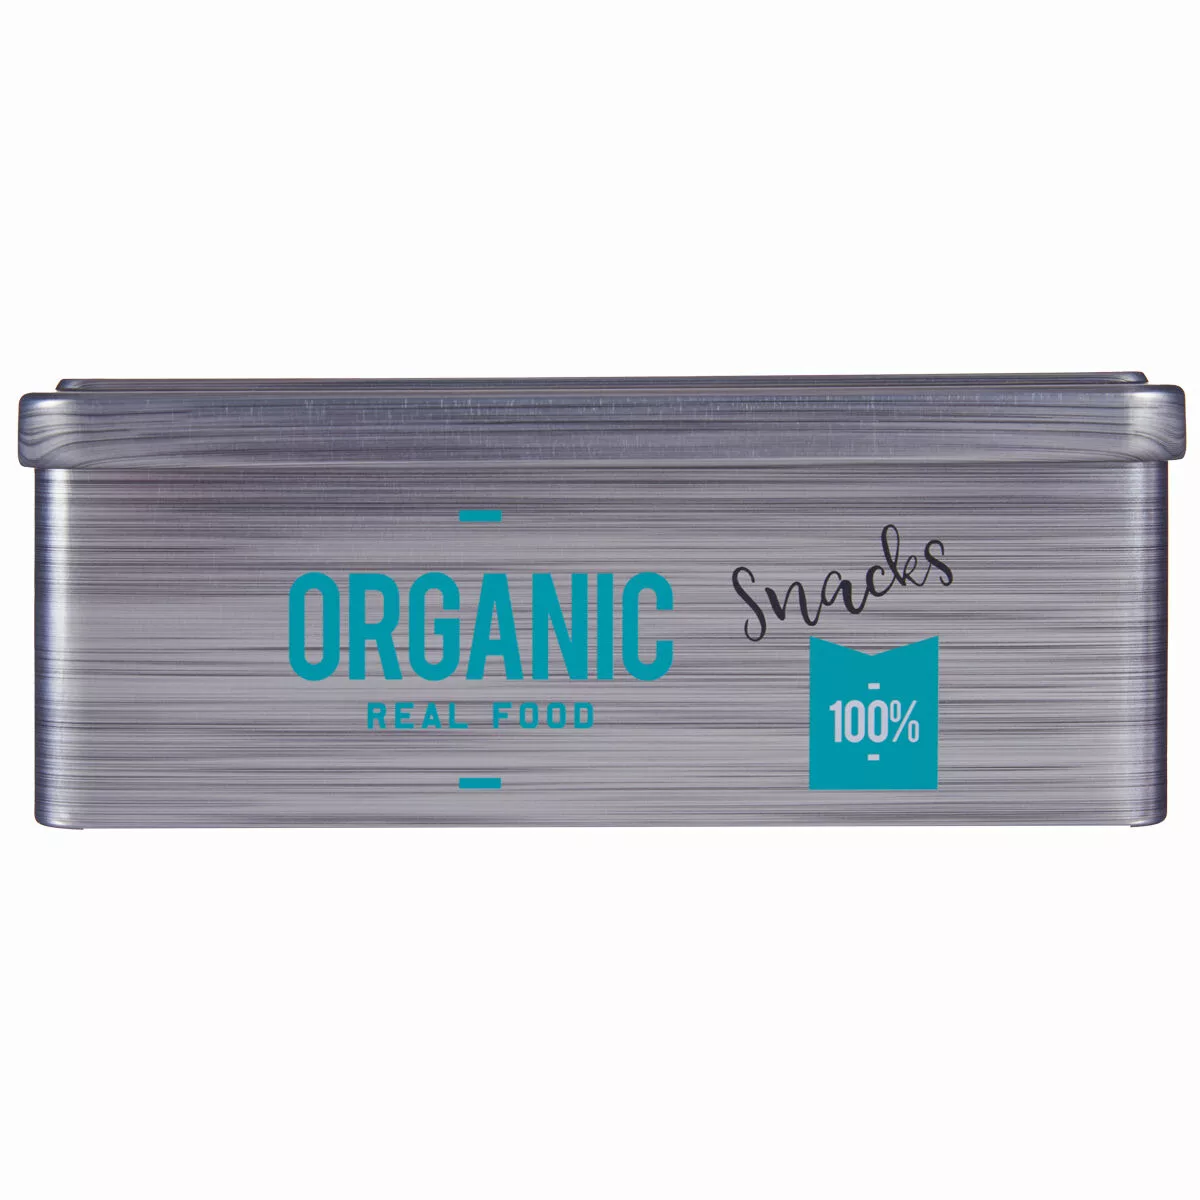 Gefäß Organic Snacks Grau Weißblech (11 X 7,1 X 18 Cm) (24 Stück) günstig online kaufen